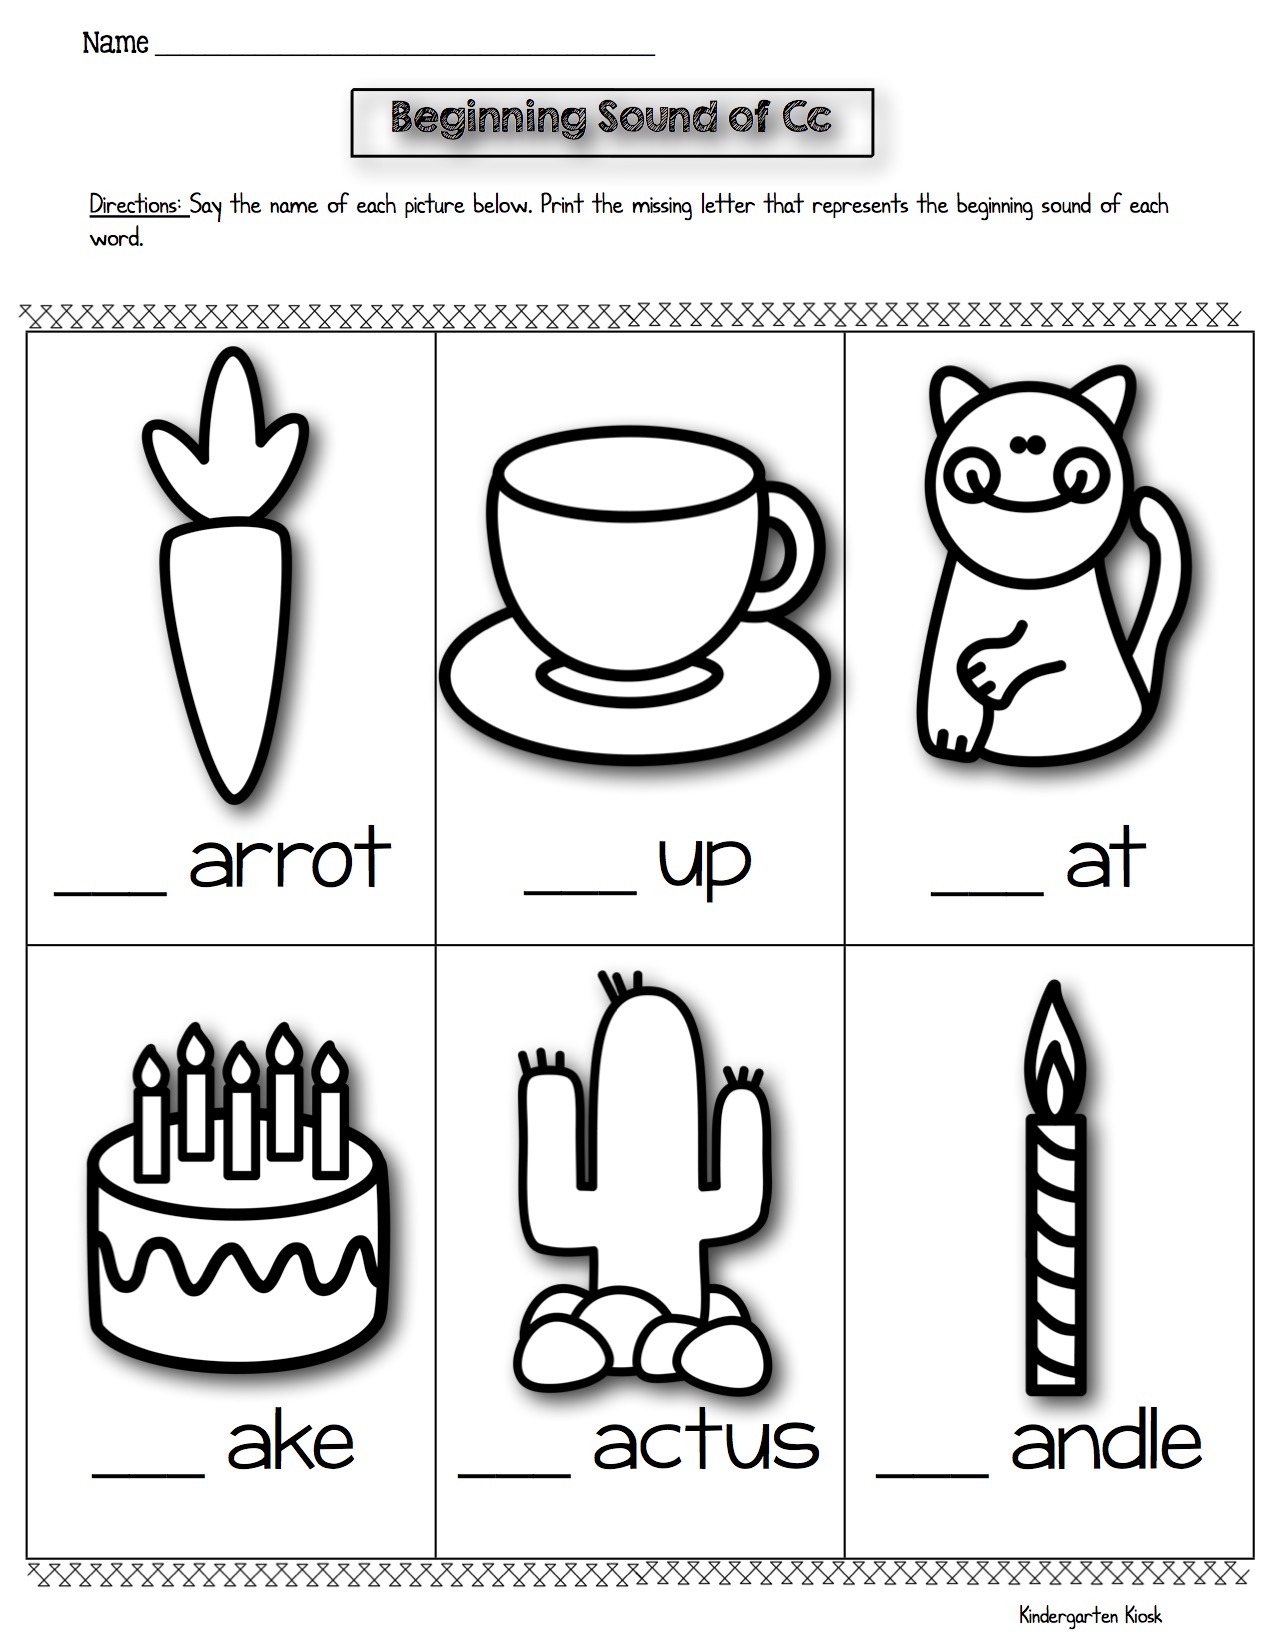 kindergarten-prep-worksheets